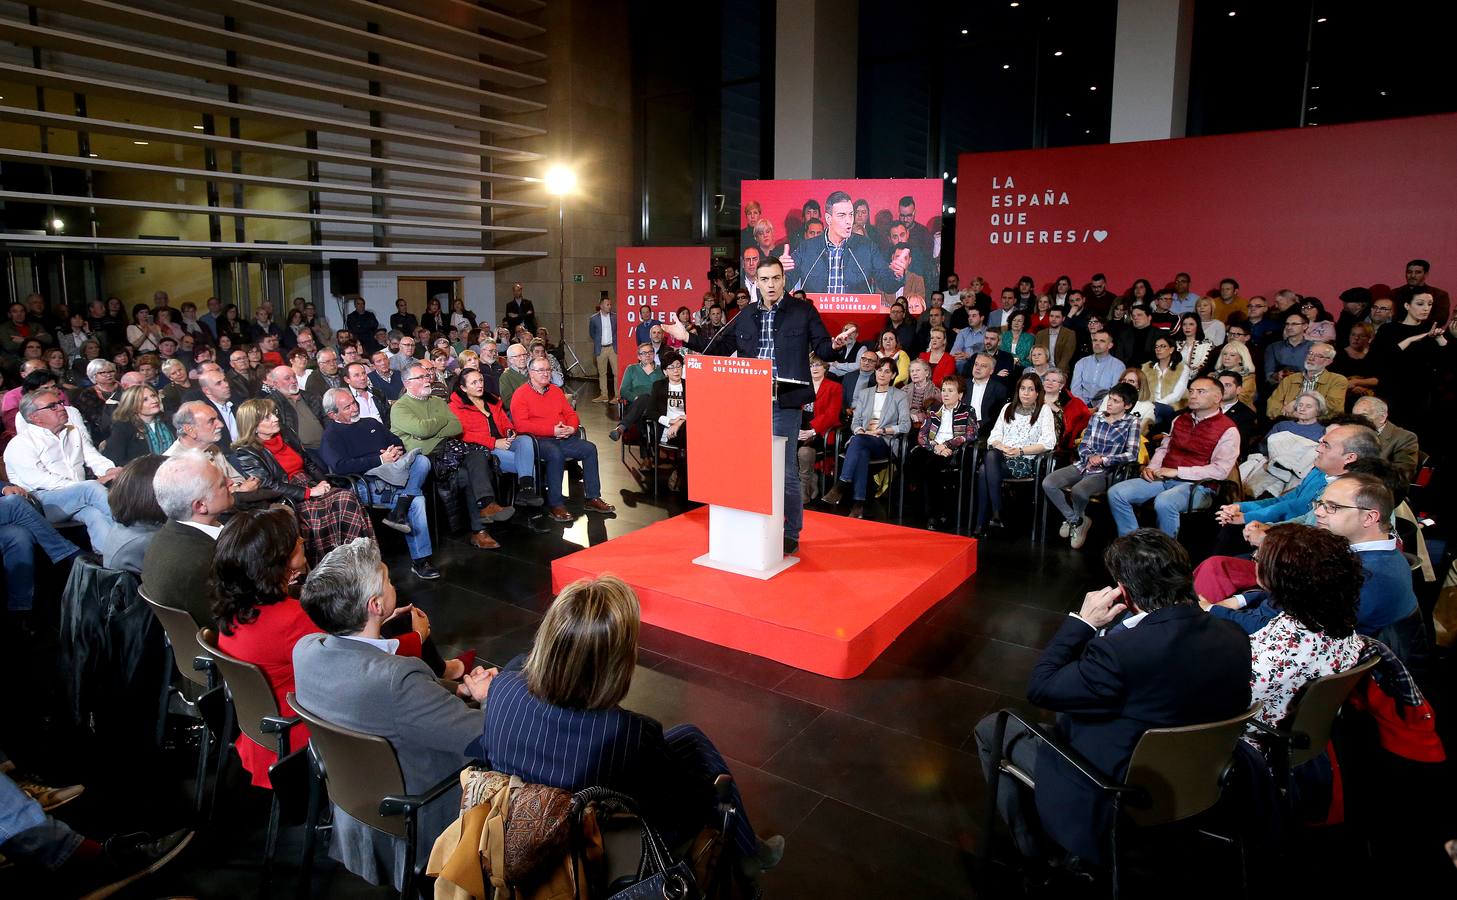 El presidente del Gobierno protagoniza un enfervorizado mitin en Riojaforum y pide el voto para Andreu y Hermoso de Mendoza